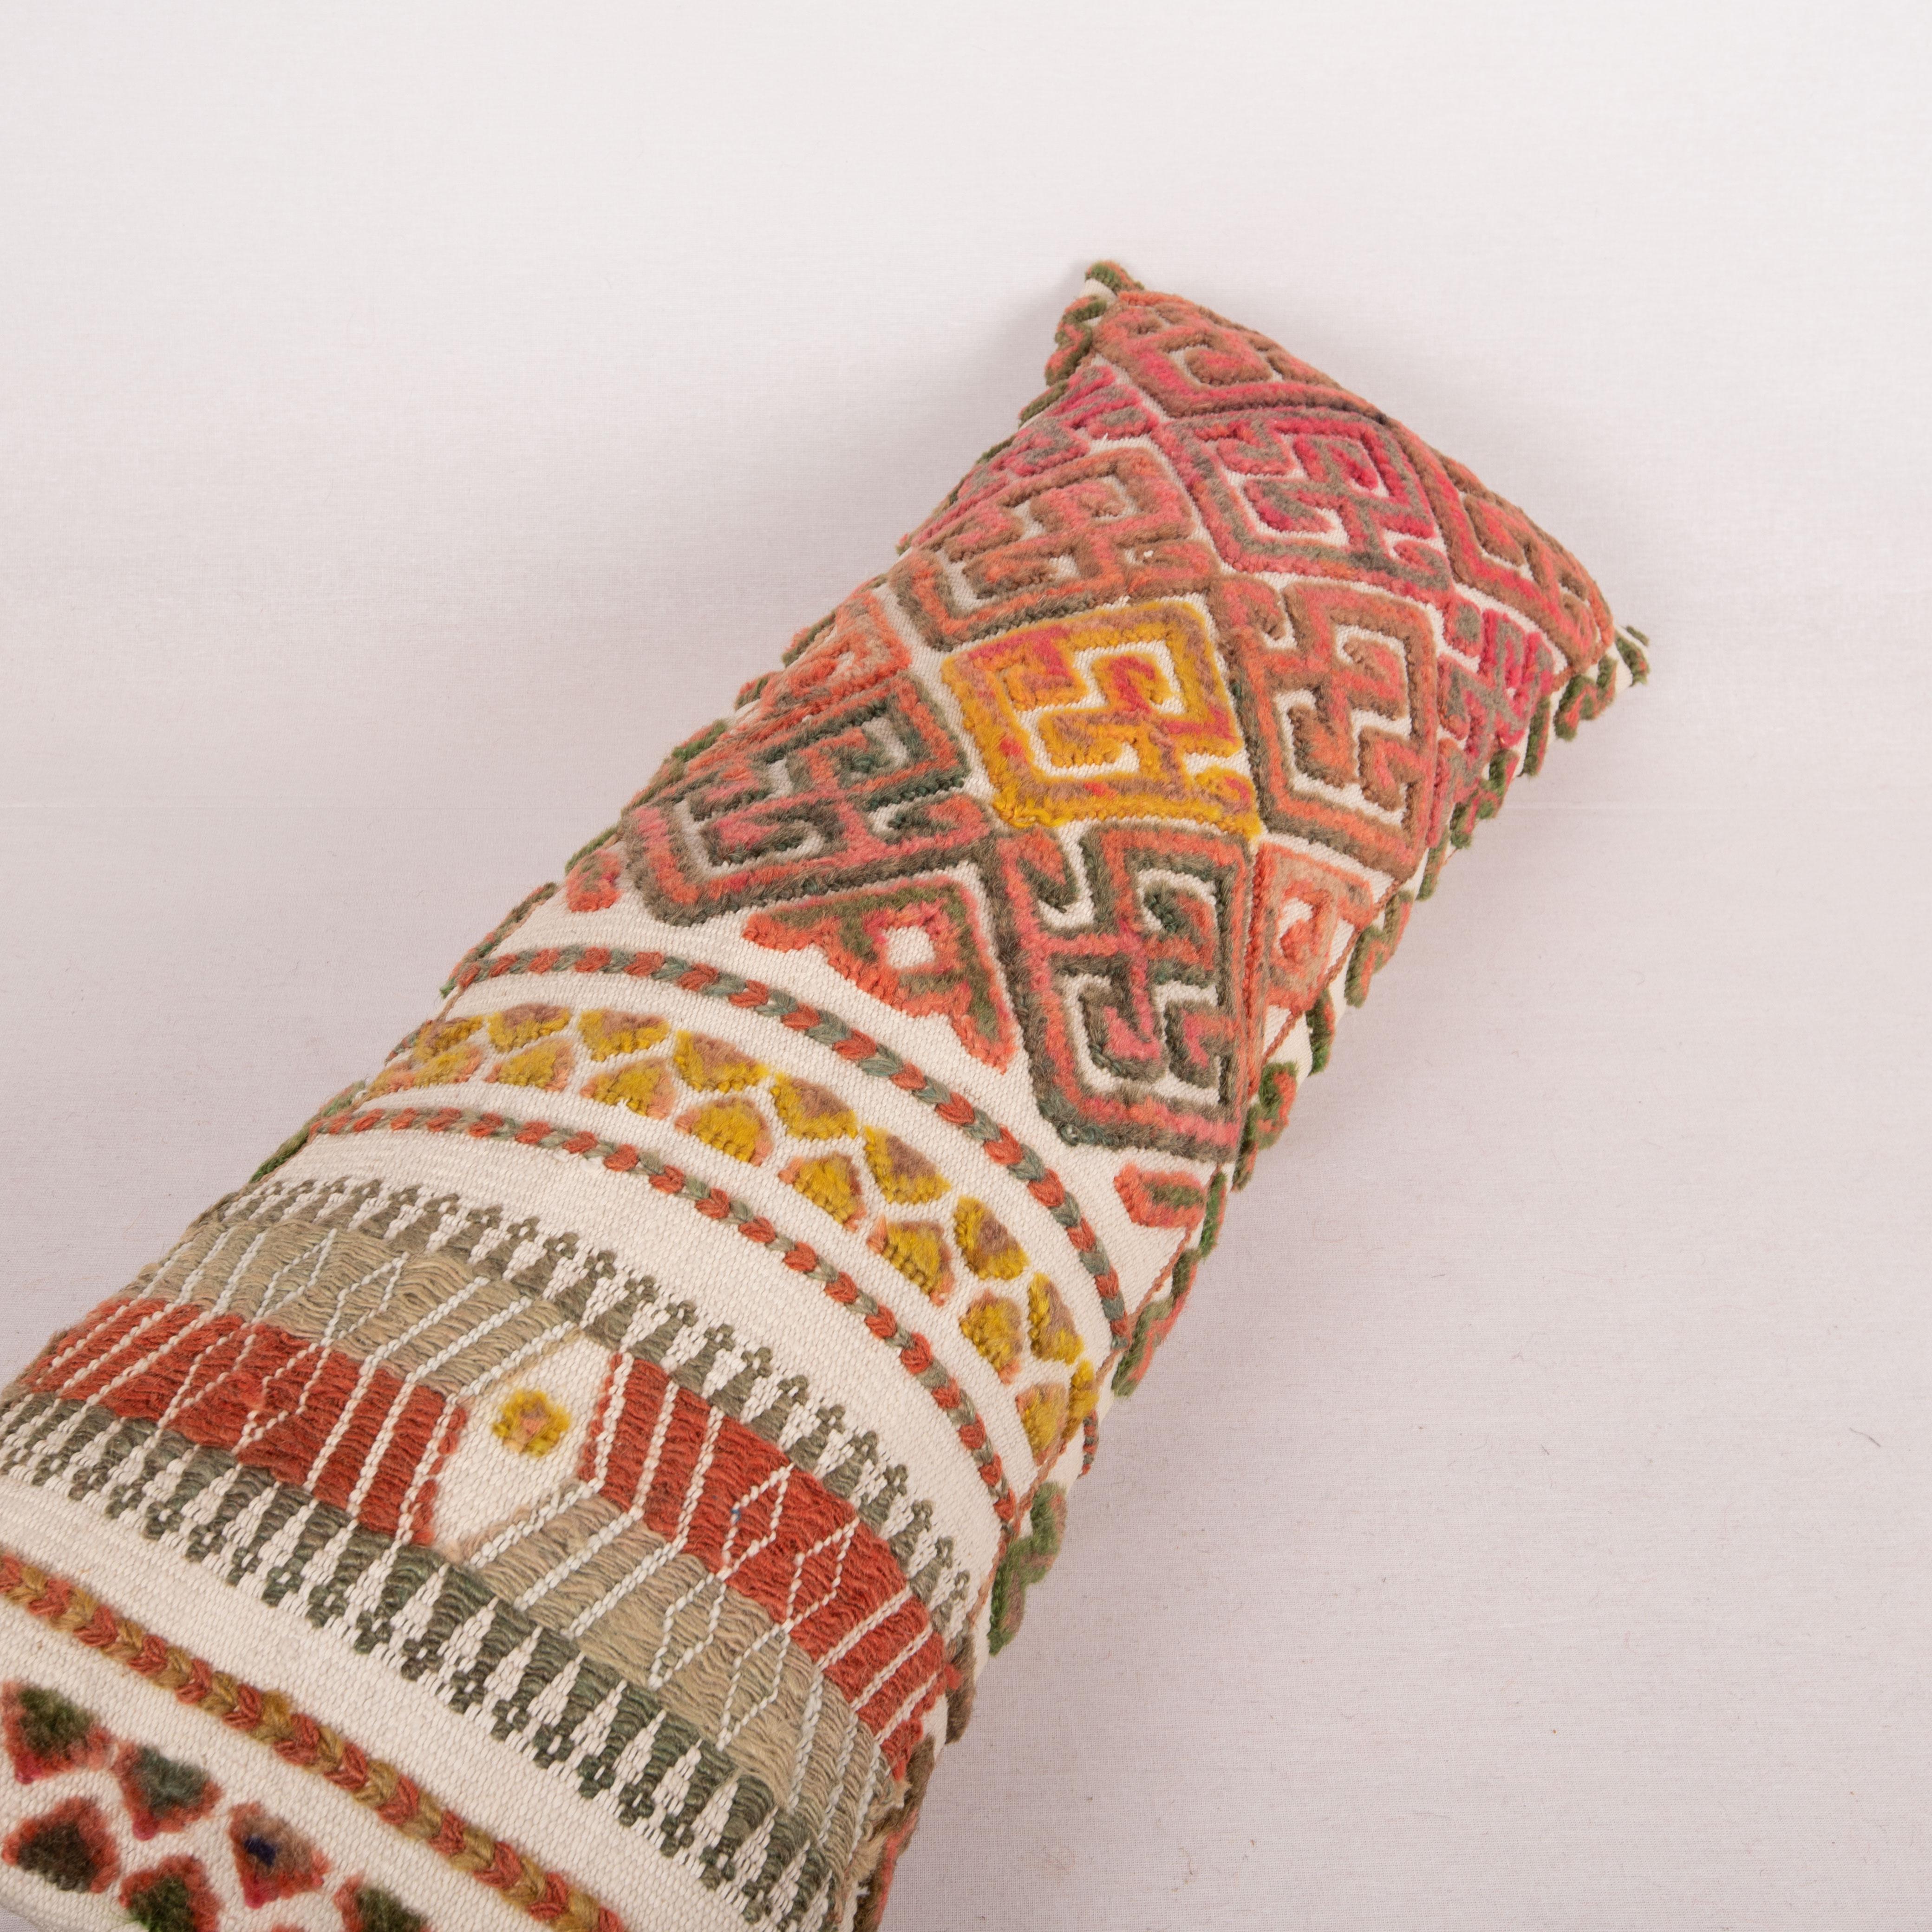 Wool Pillow Cover Made from an Early 20th C. Karakalpak Tent Band, Uzbekistan